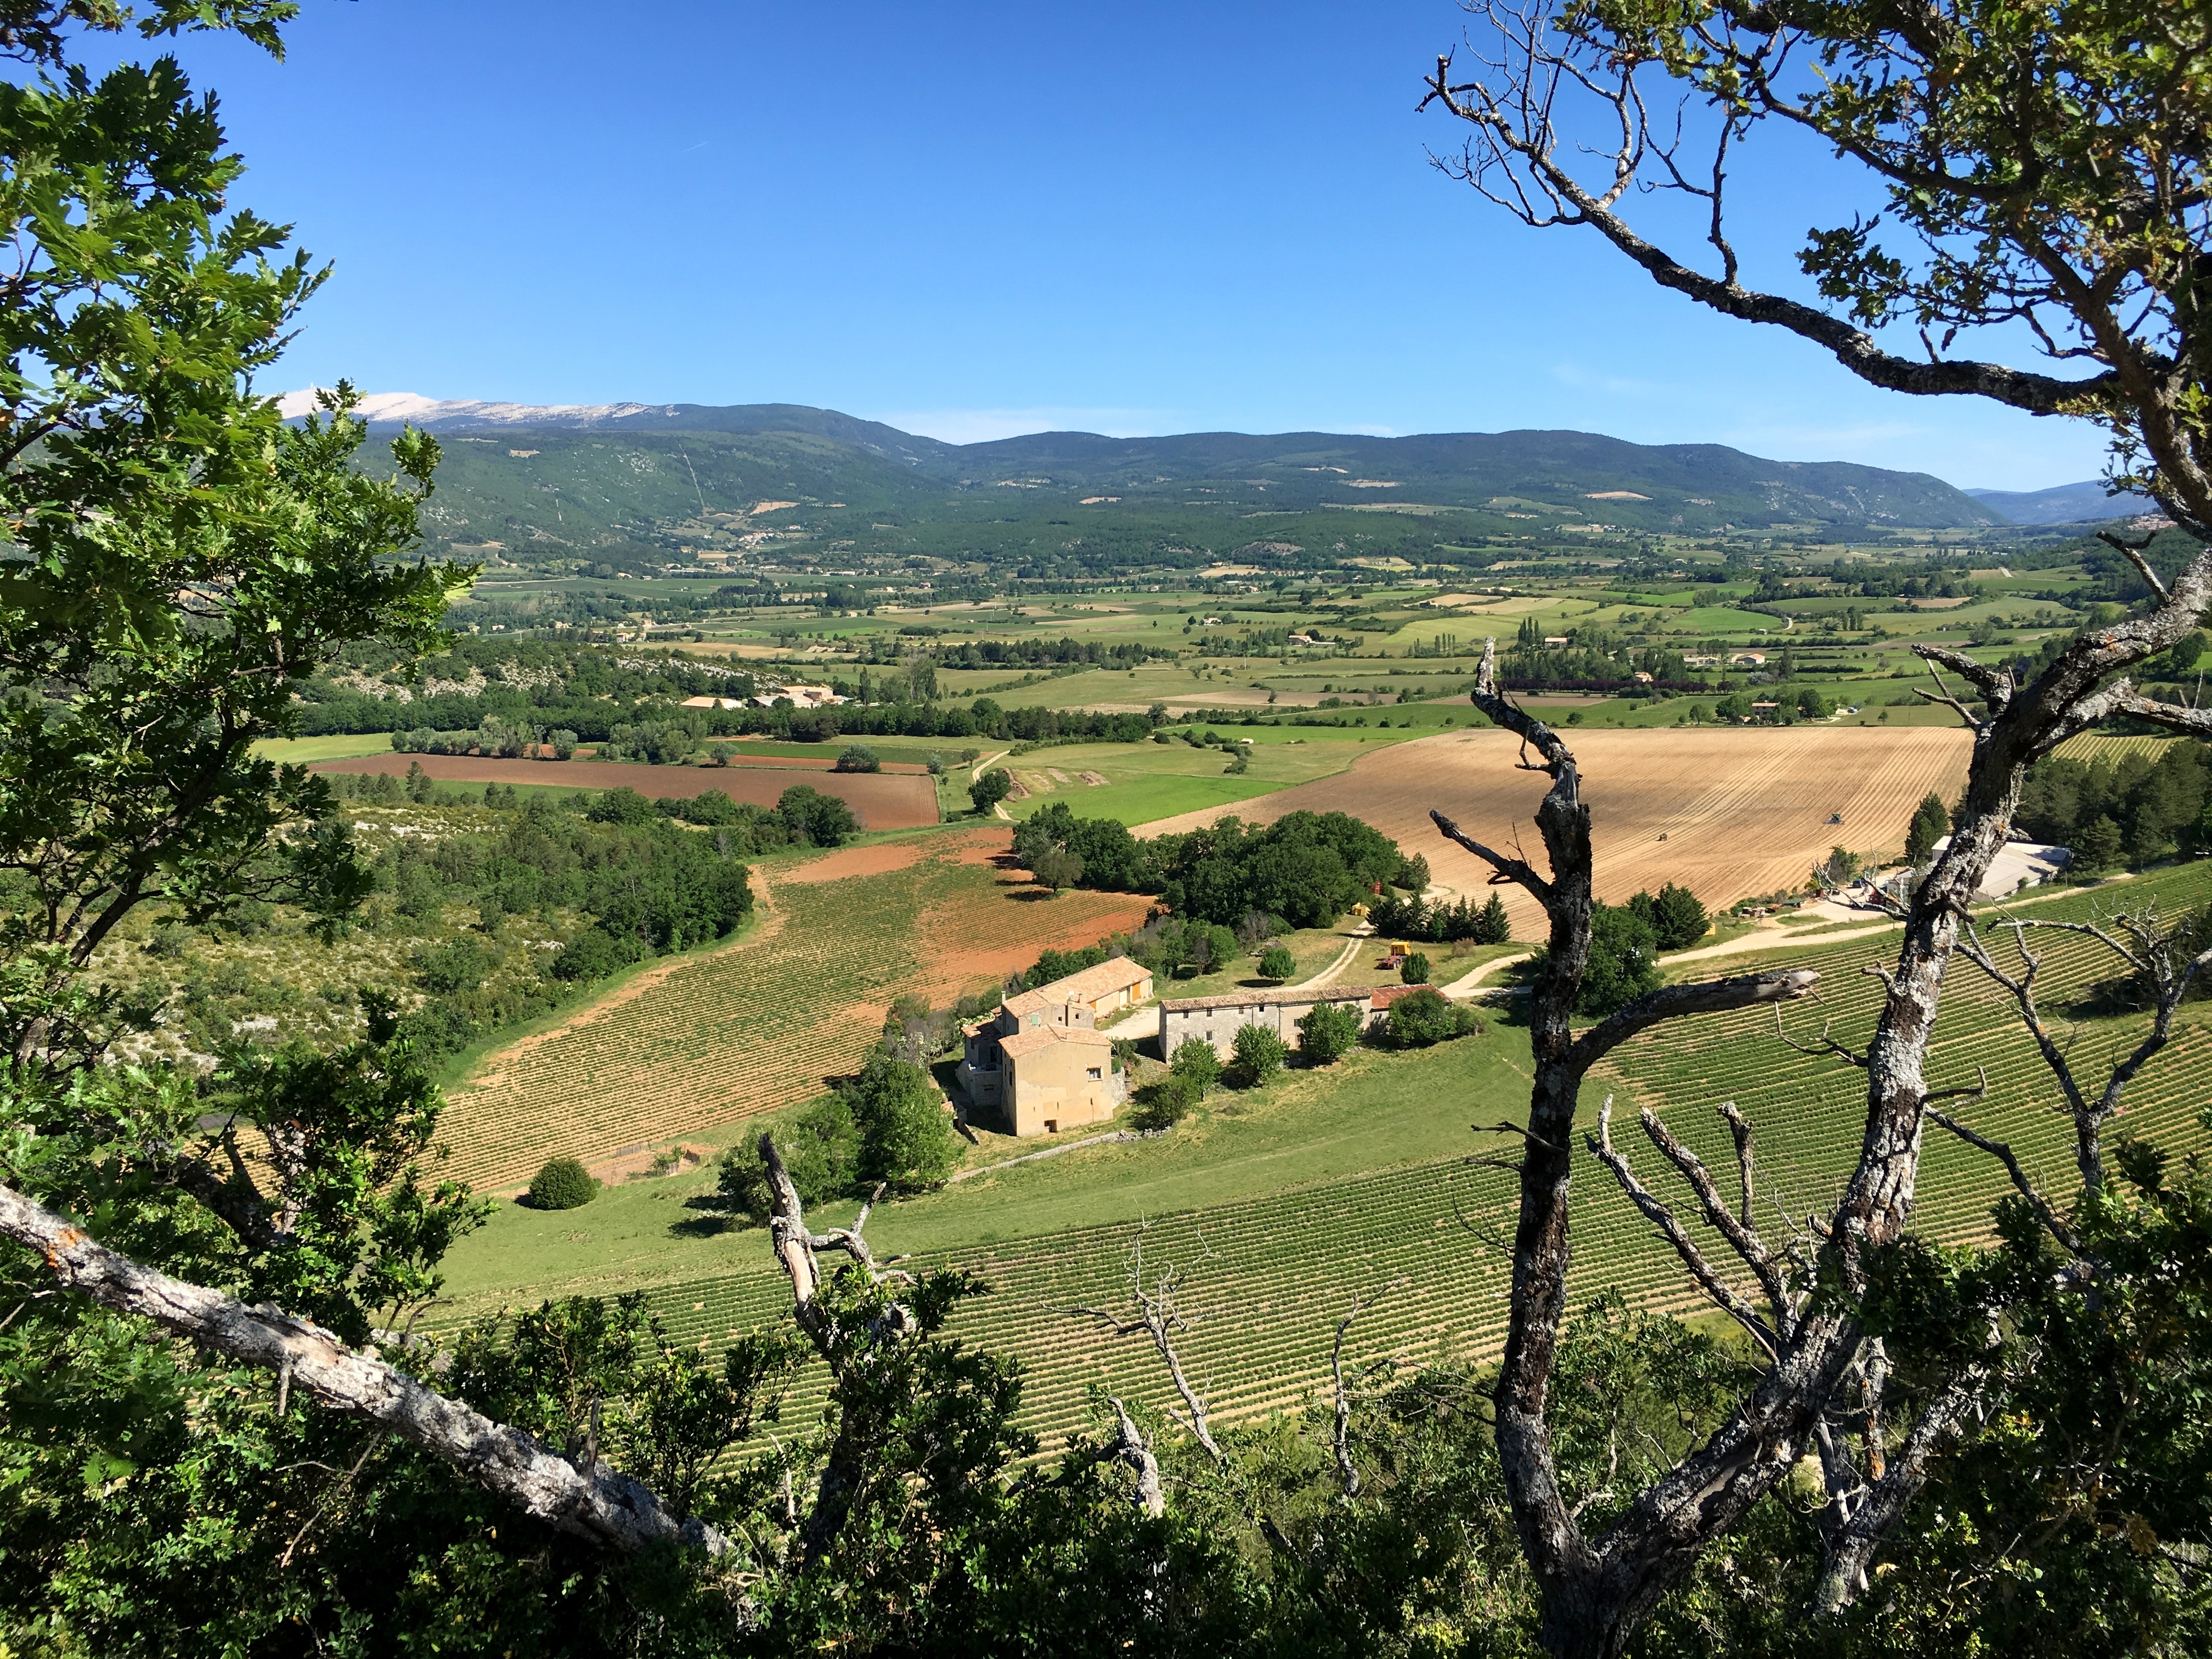 2019.06_Provence kerékpártúra